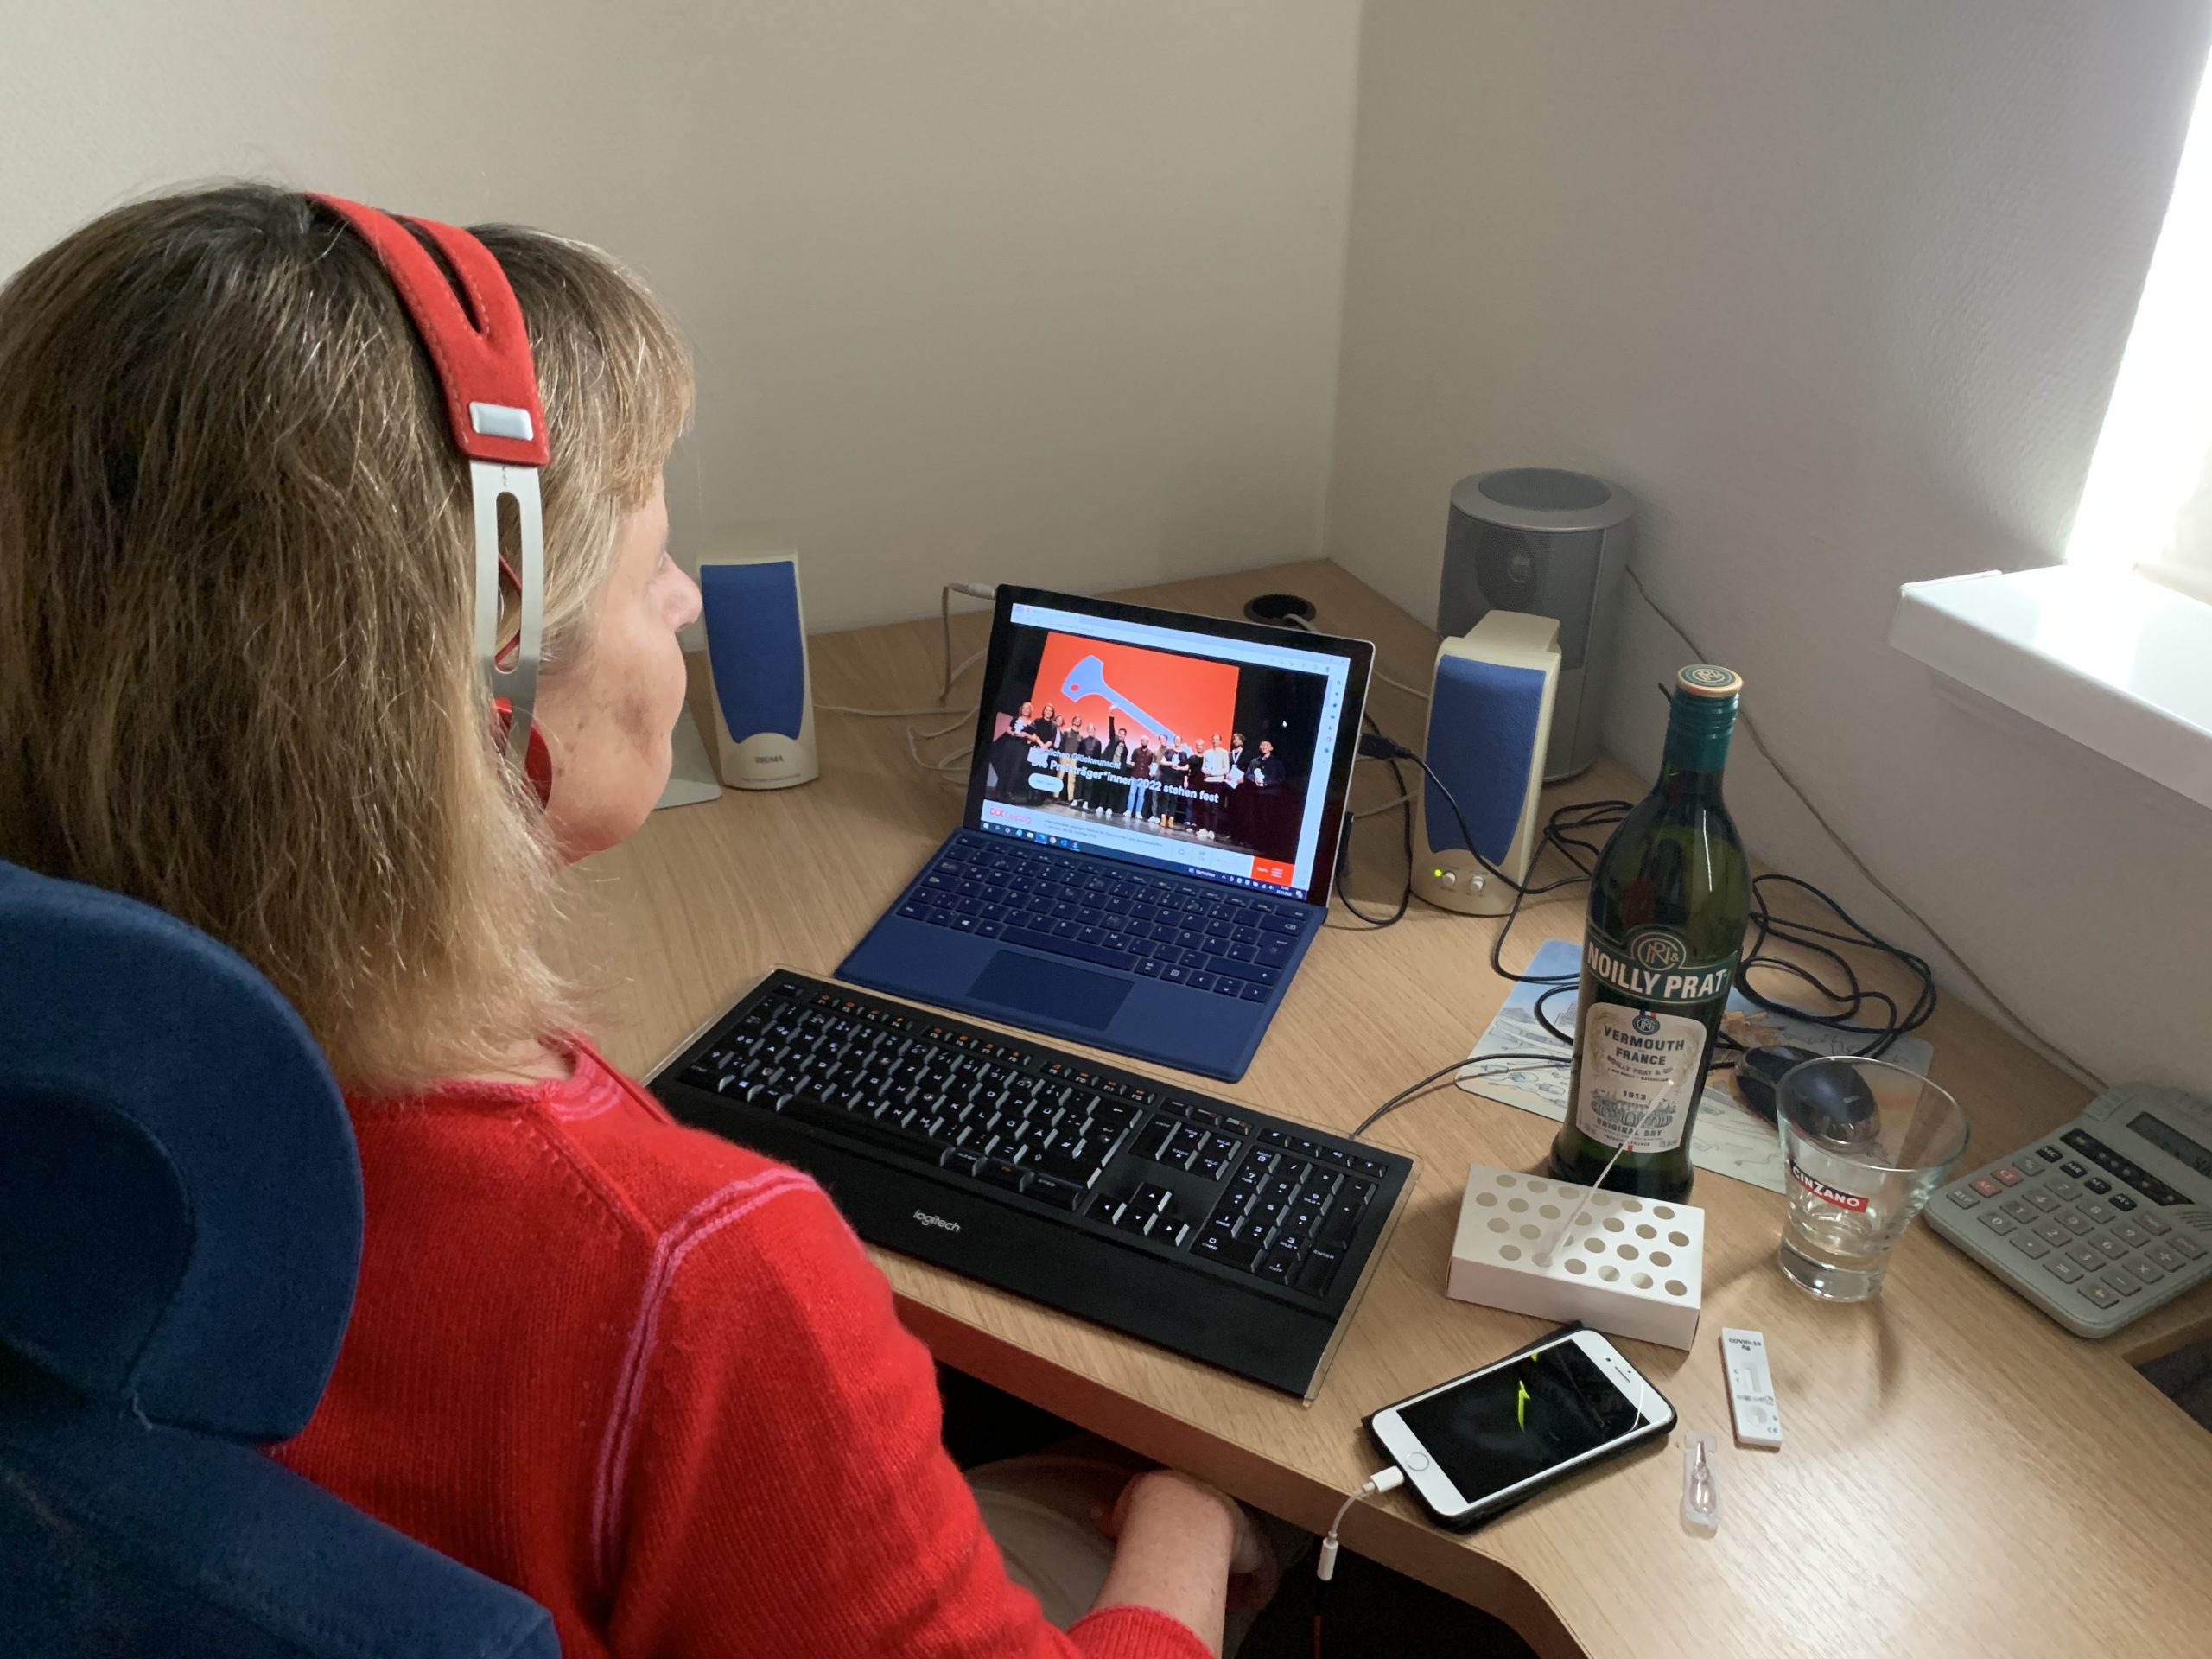 Im roten Pulli sitzt die Blindgängerin mit Kopfhörern an ihrem Schreibtisch, auf dem Bildschirm ihres Laptops die Startseite des DOK Leipzig. Links und rechts stehen Lautsprecherboxen. Rechts neben der Tastatur liegt ein Smartphone, daneben steht eine Flasche Wermut mit einem Glas. Ein ausgepacktes Corona-Testset liegt auf dem Tisch.